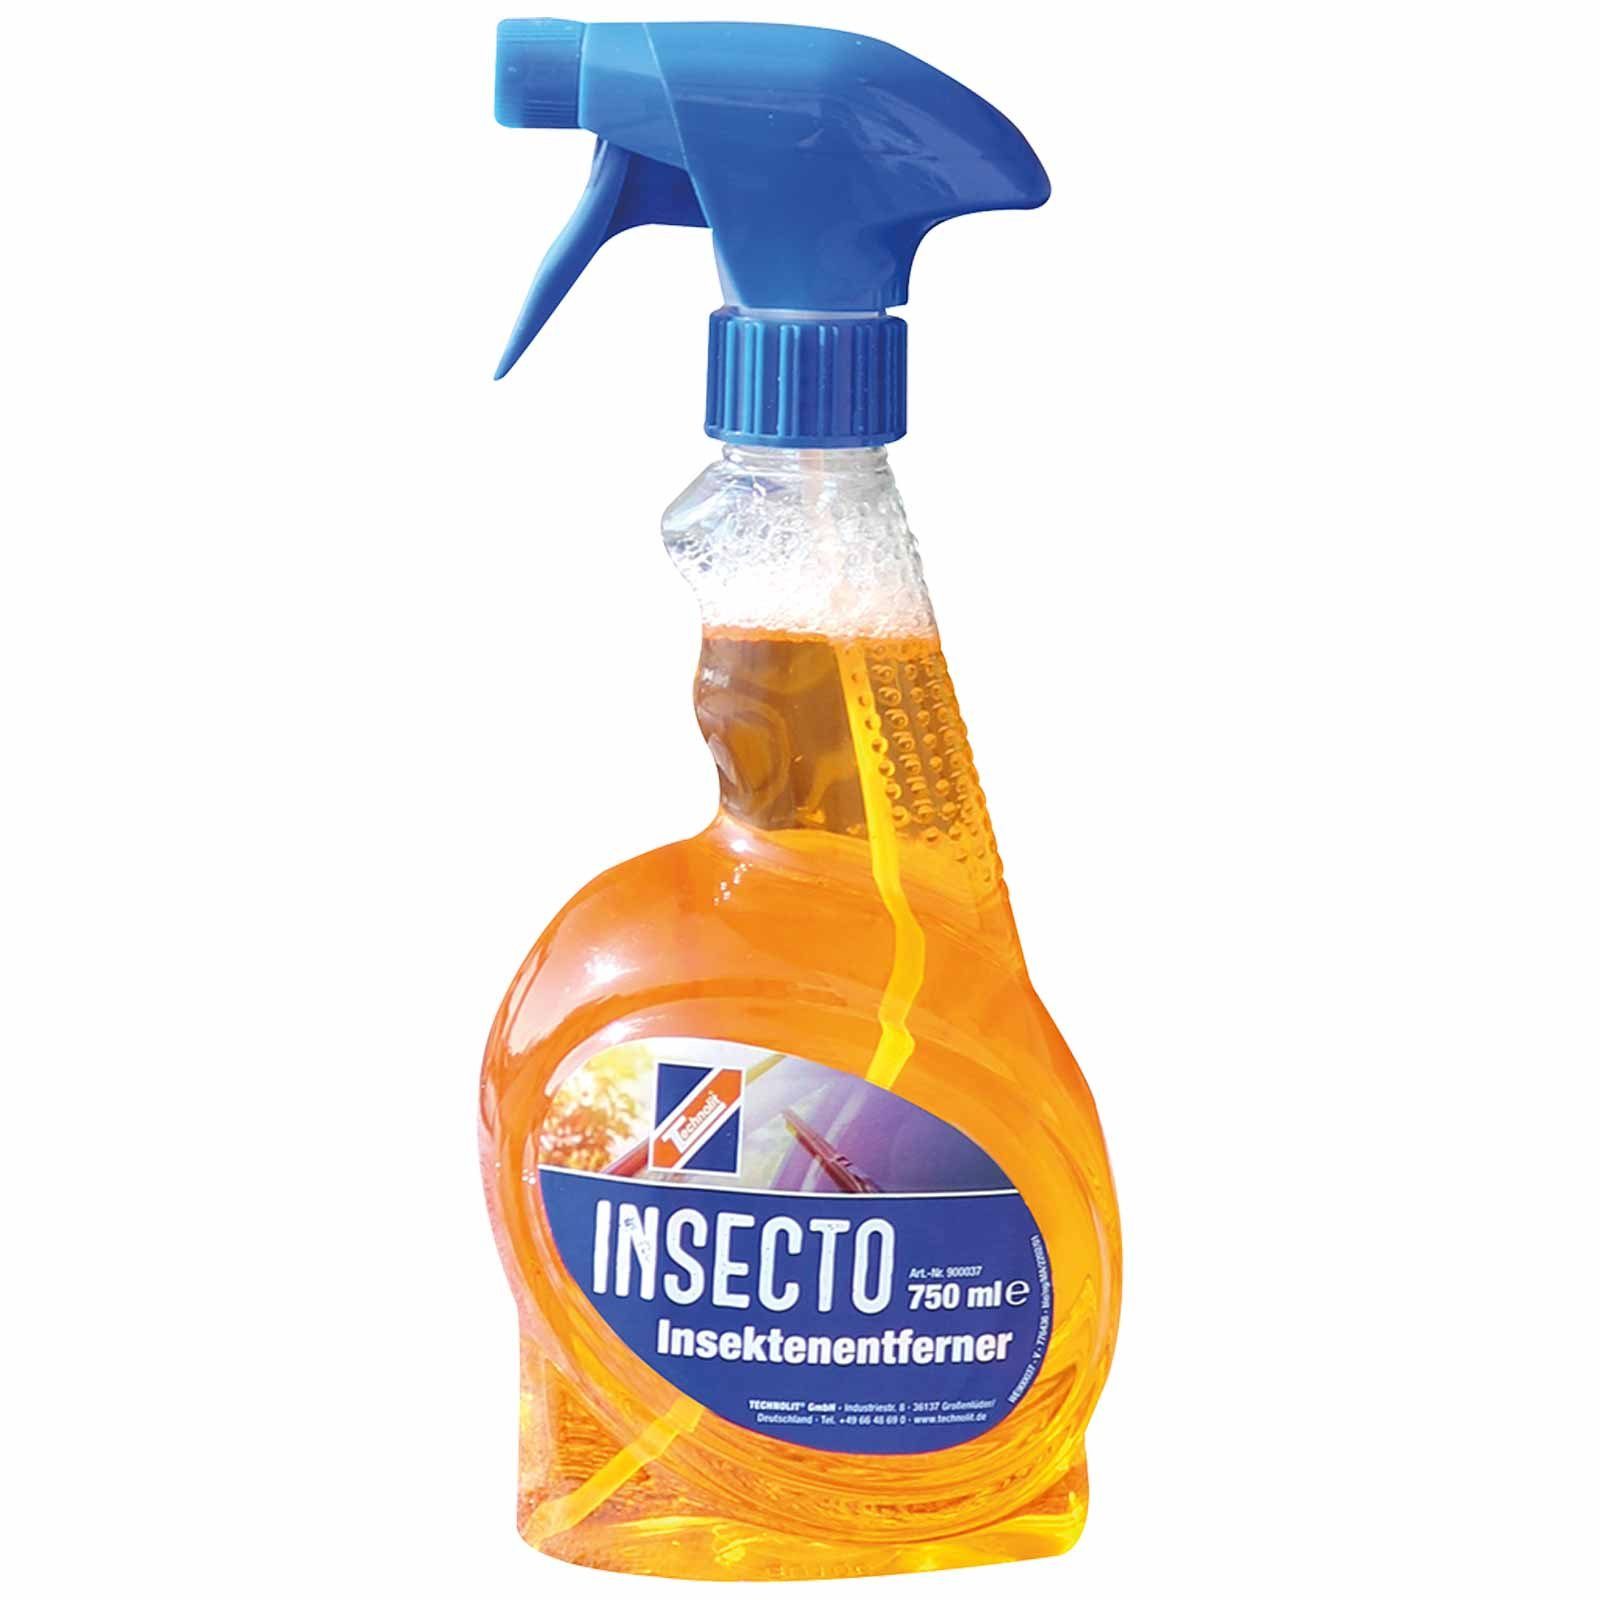 Insecto Insektenentferner TECHNOLIT® Insektenentferner